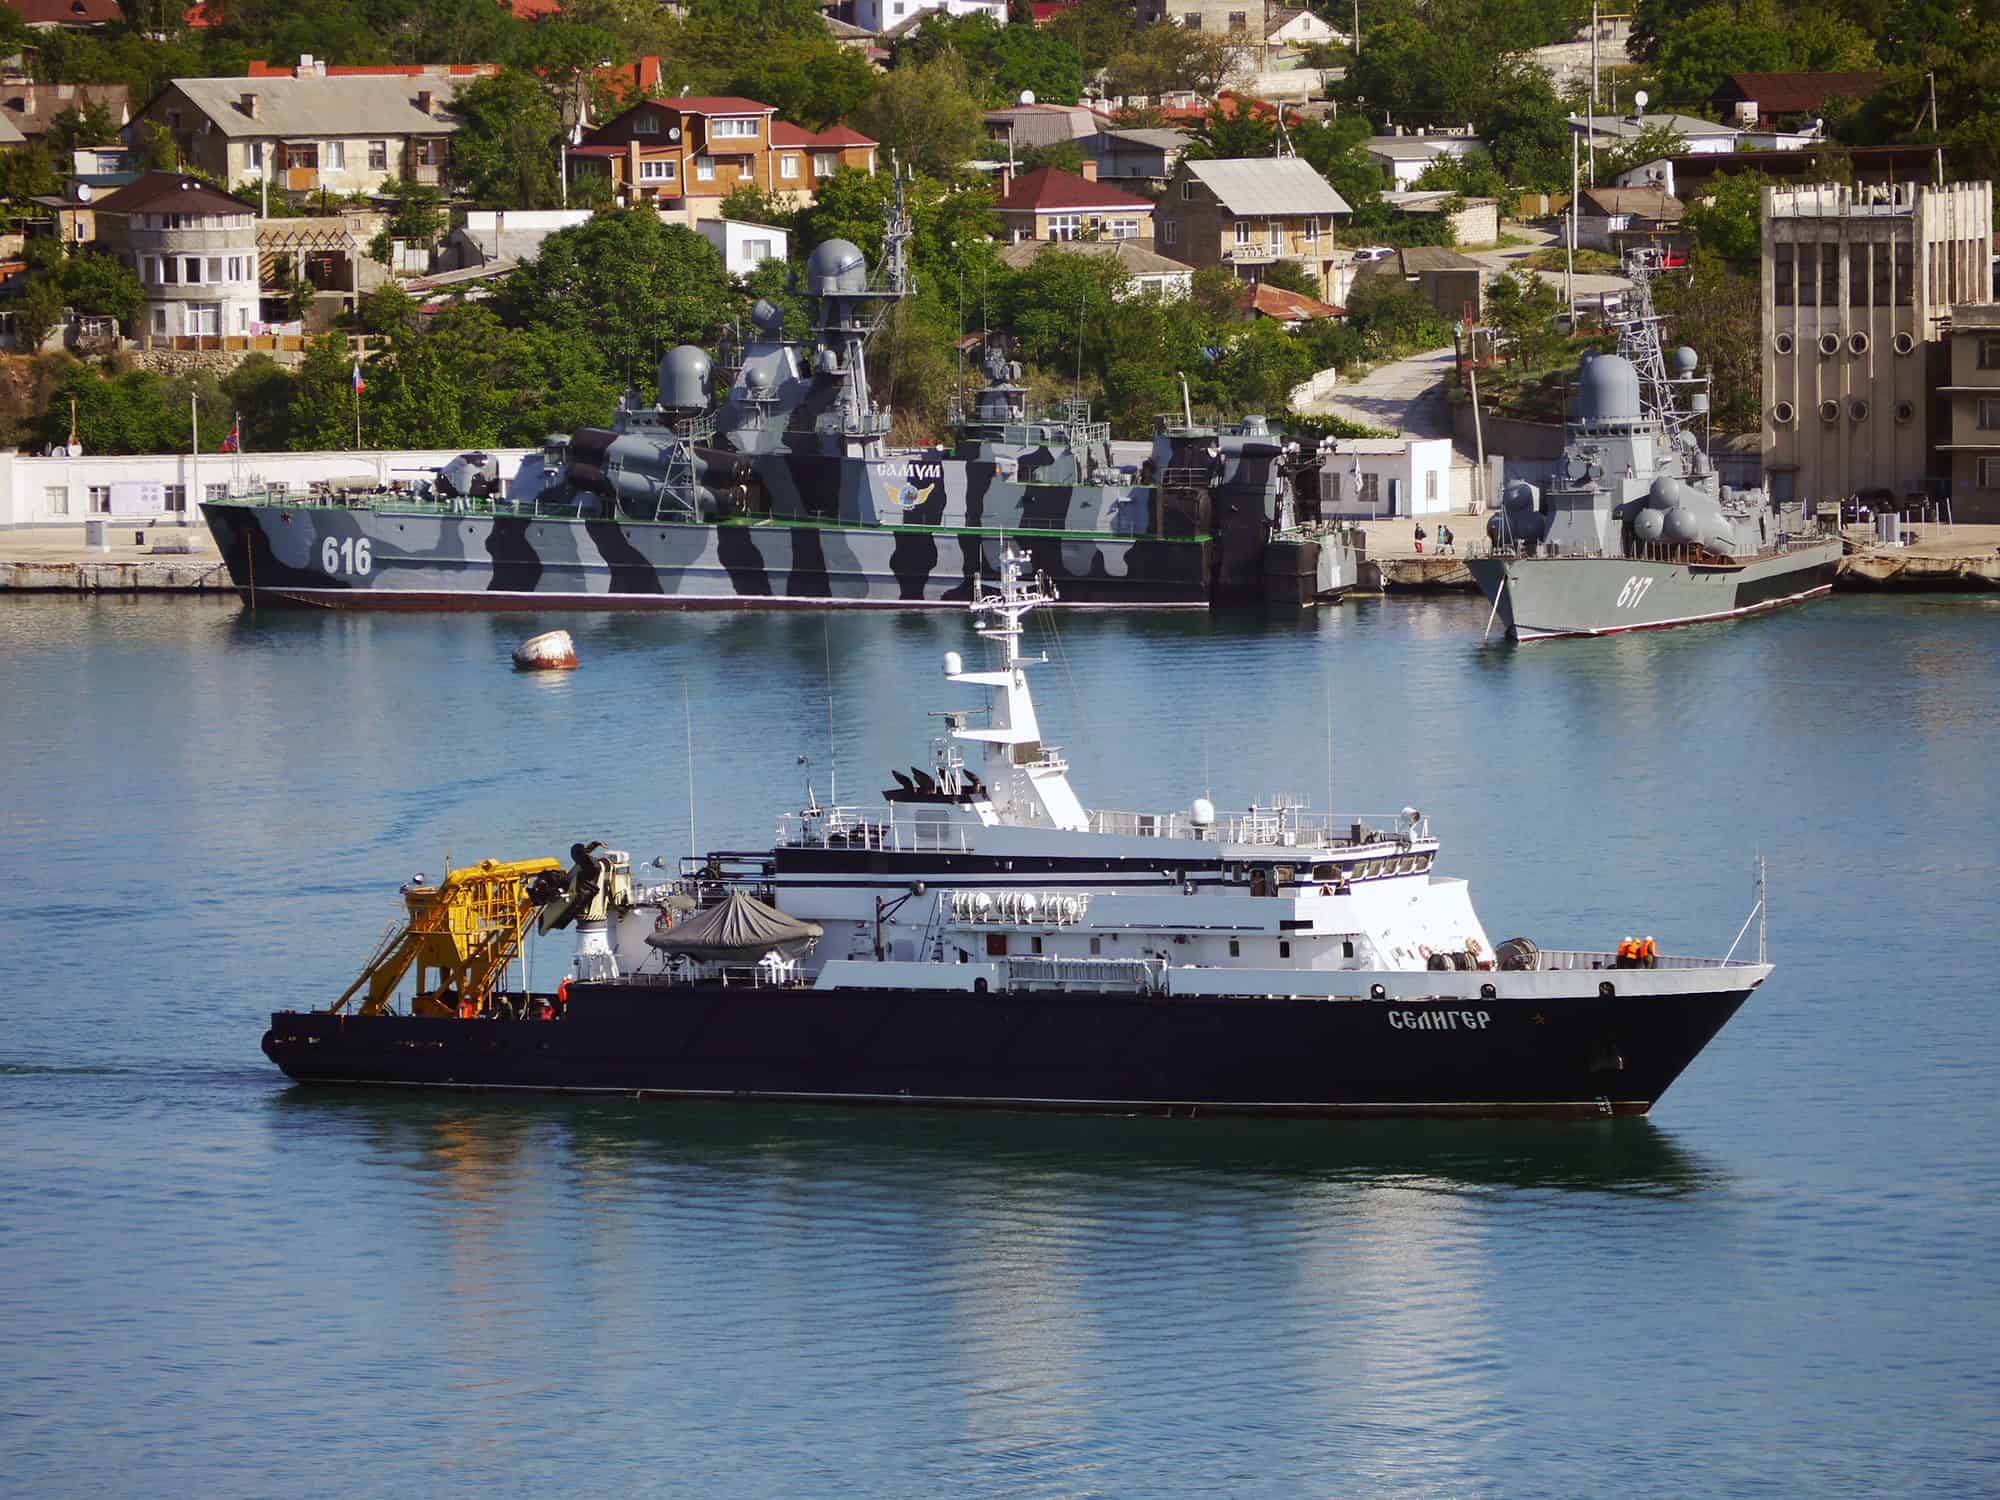 Дослідне судно "Селигер" в Севастопольській бухті Фото - А. Брічевскій, 23 травня 2018 року